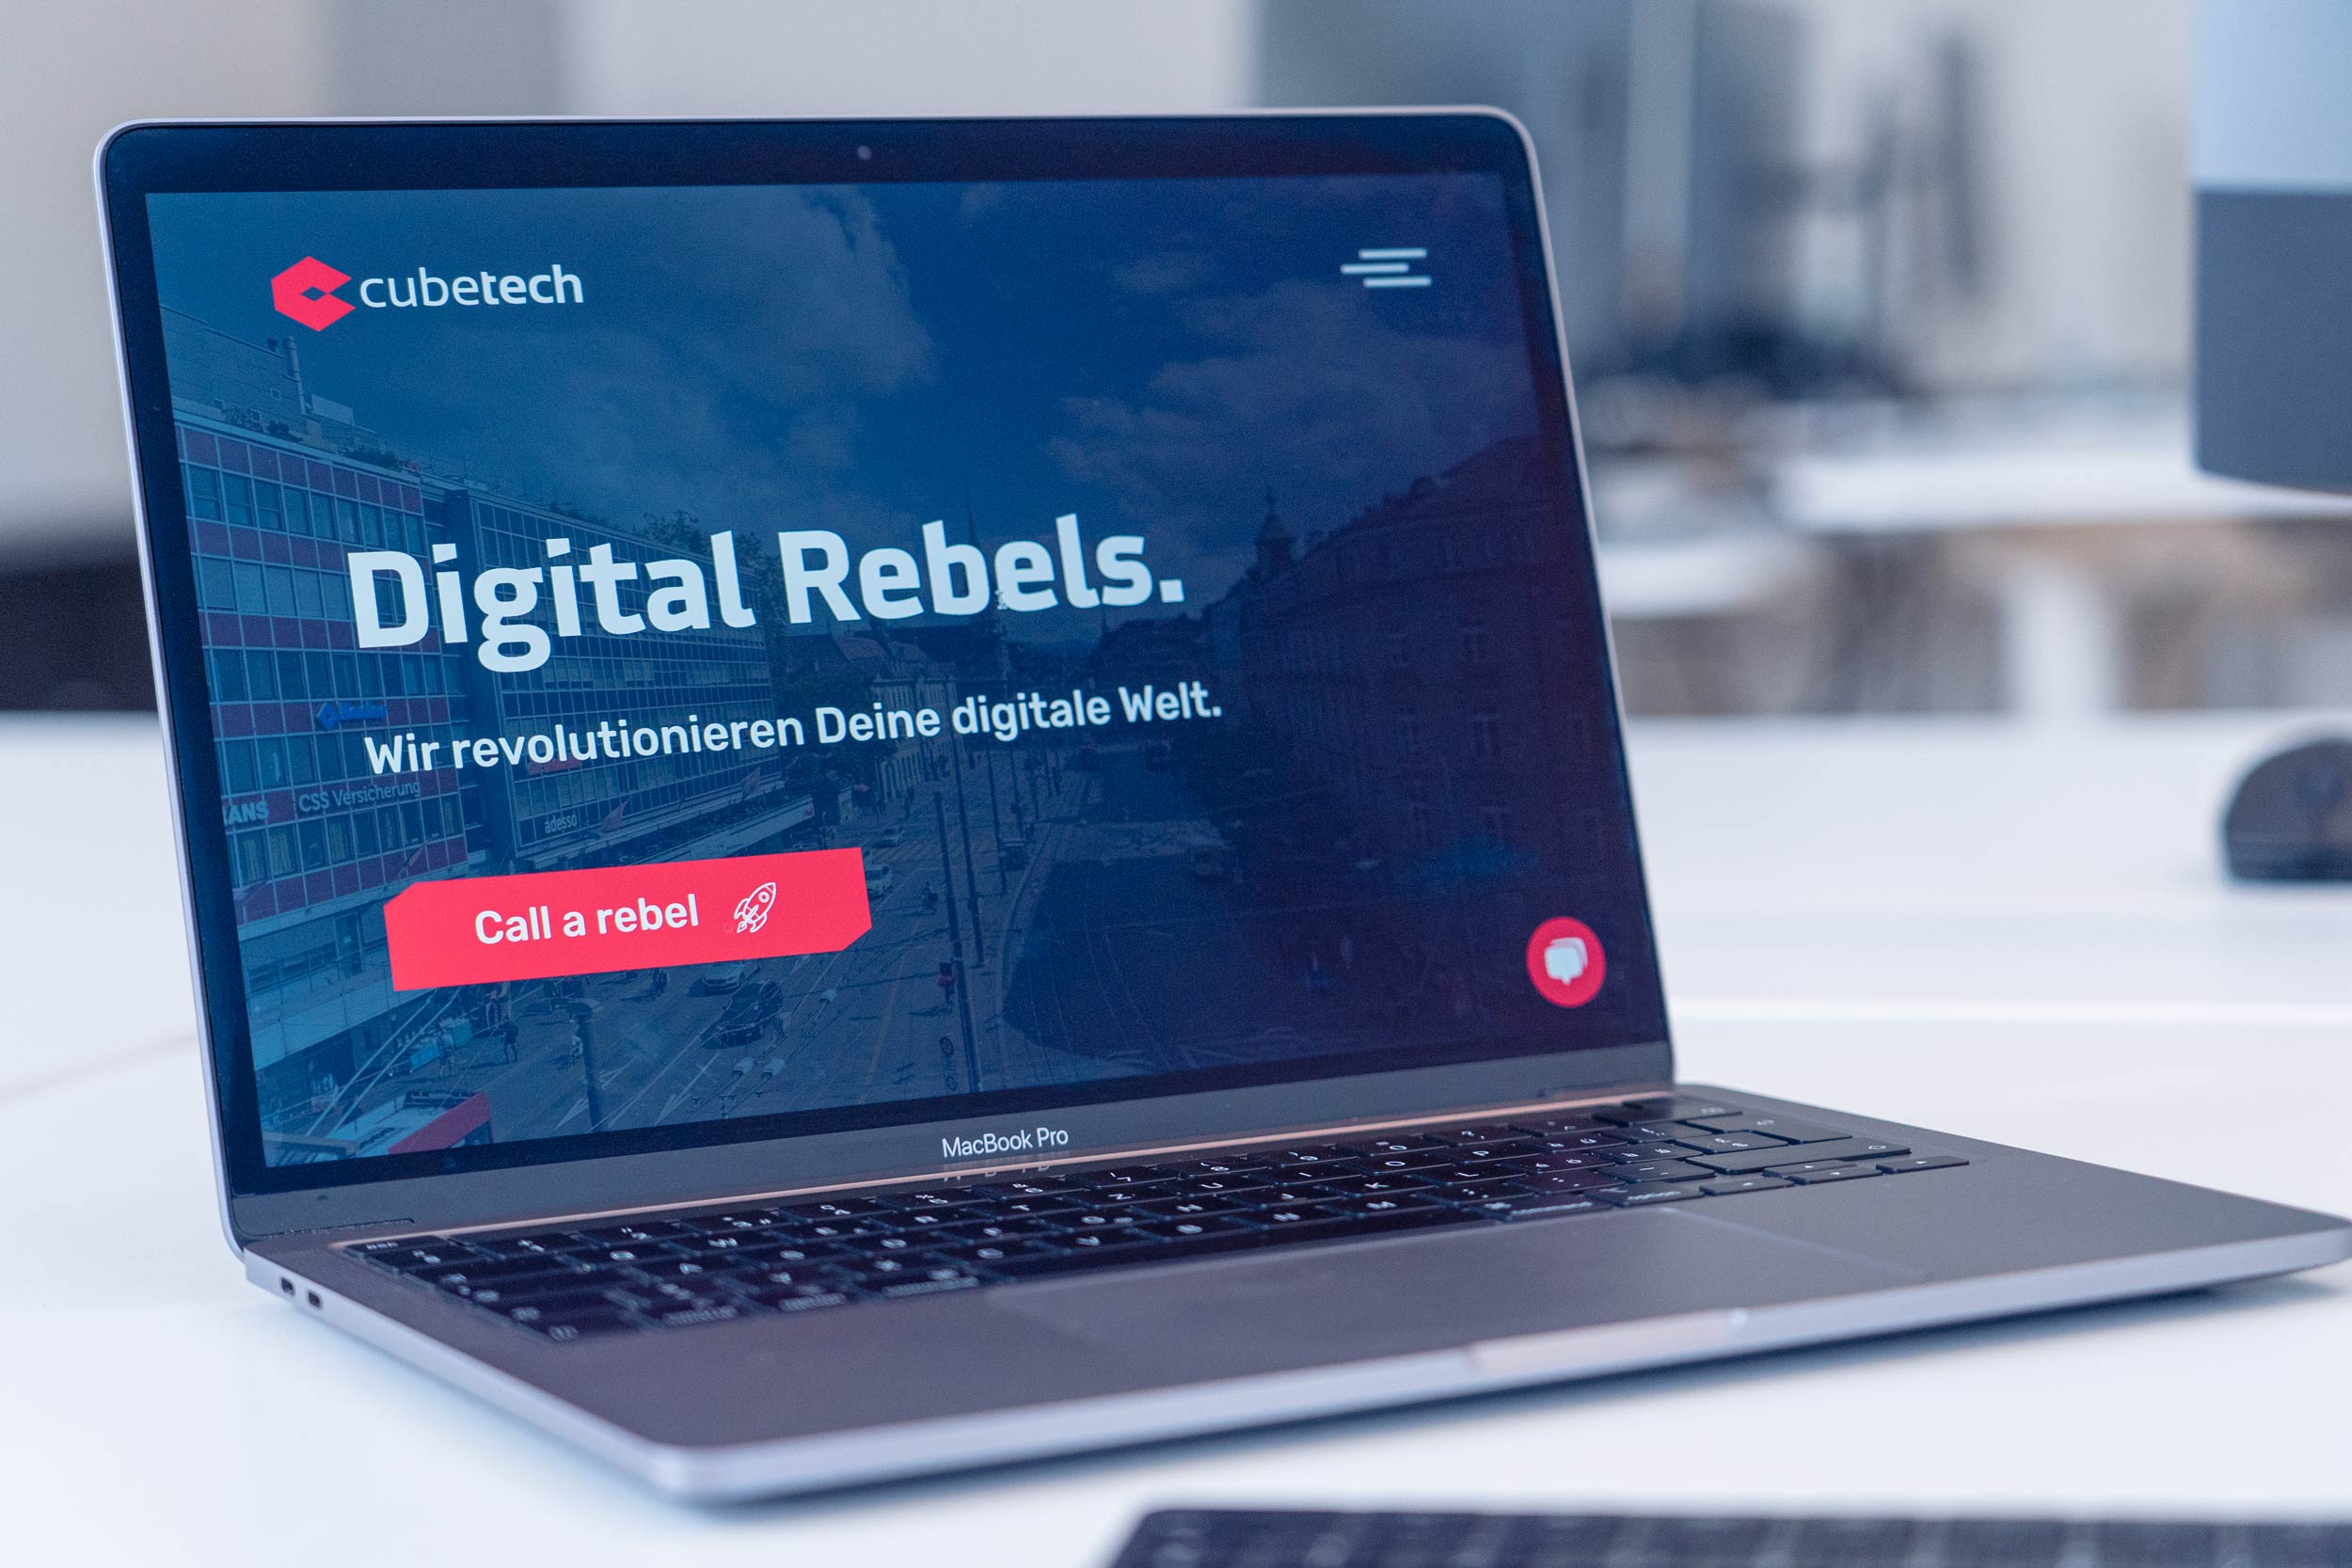 cubetech - Digital Rebels